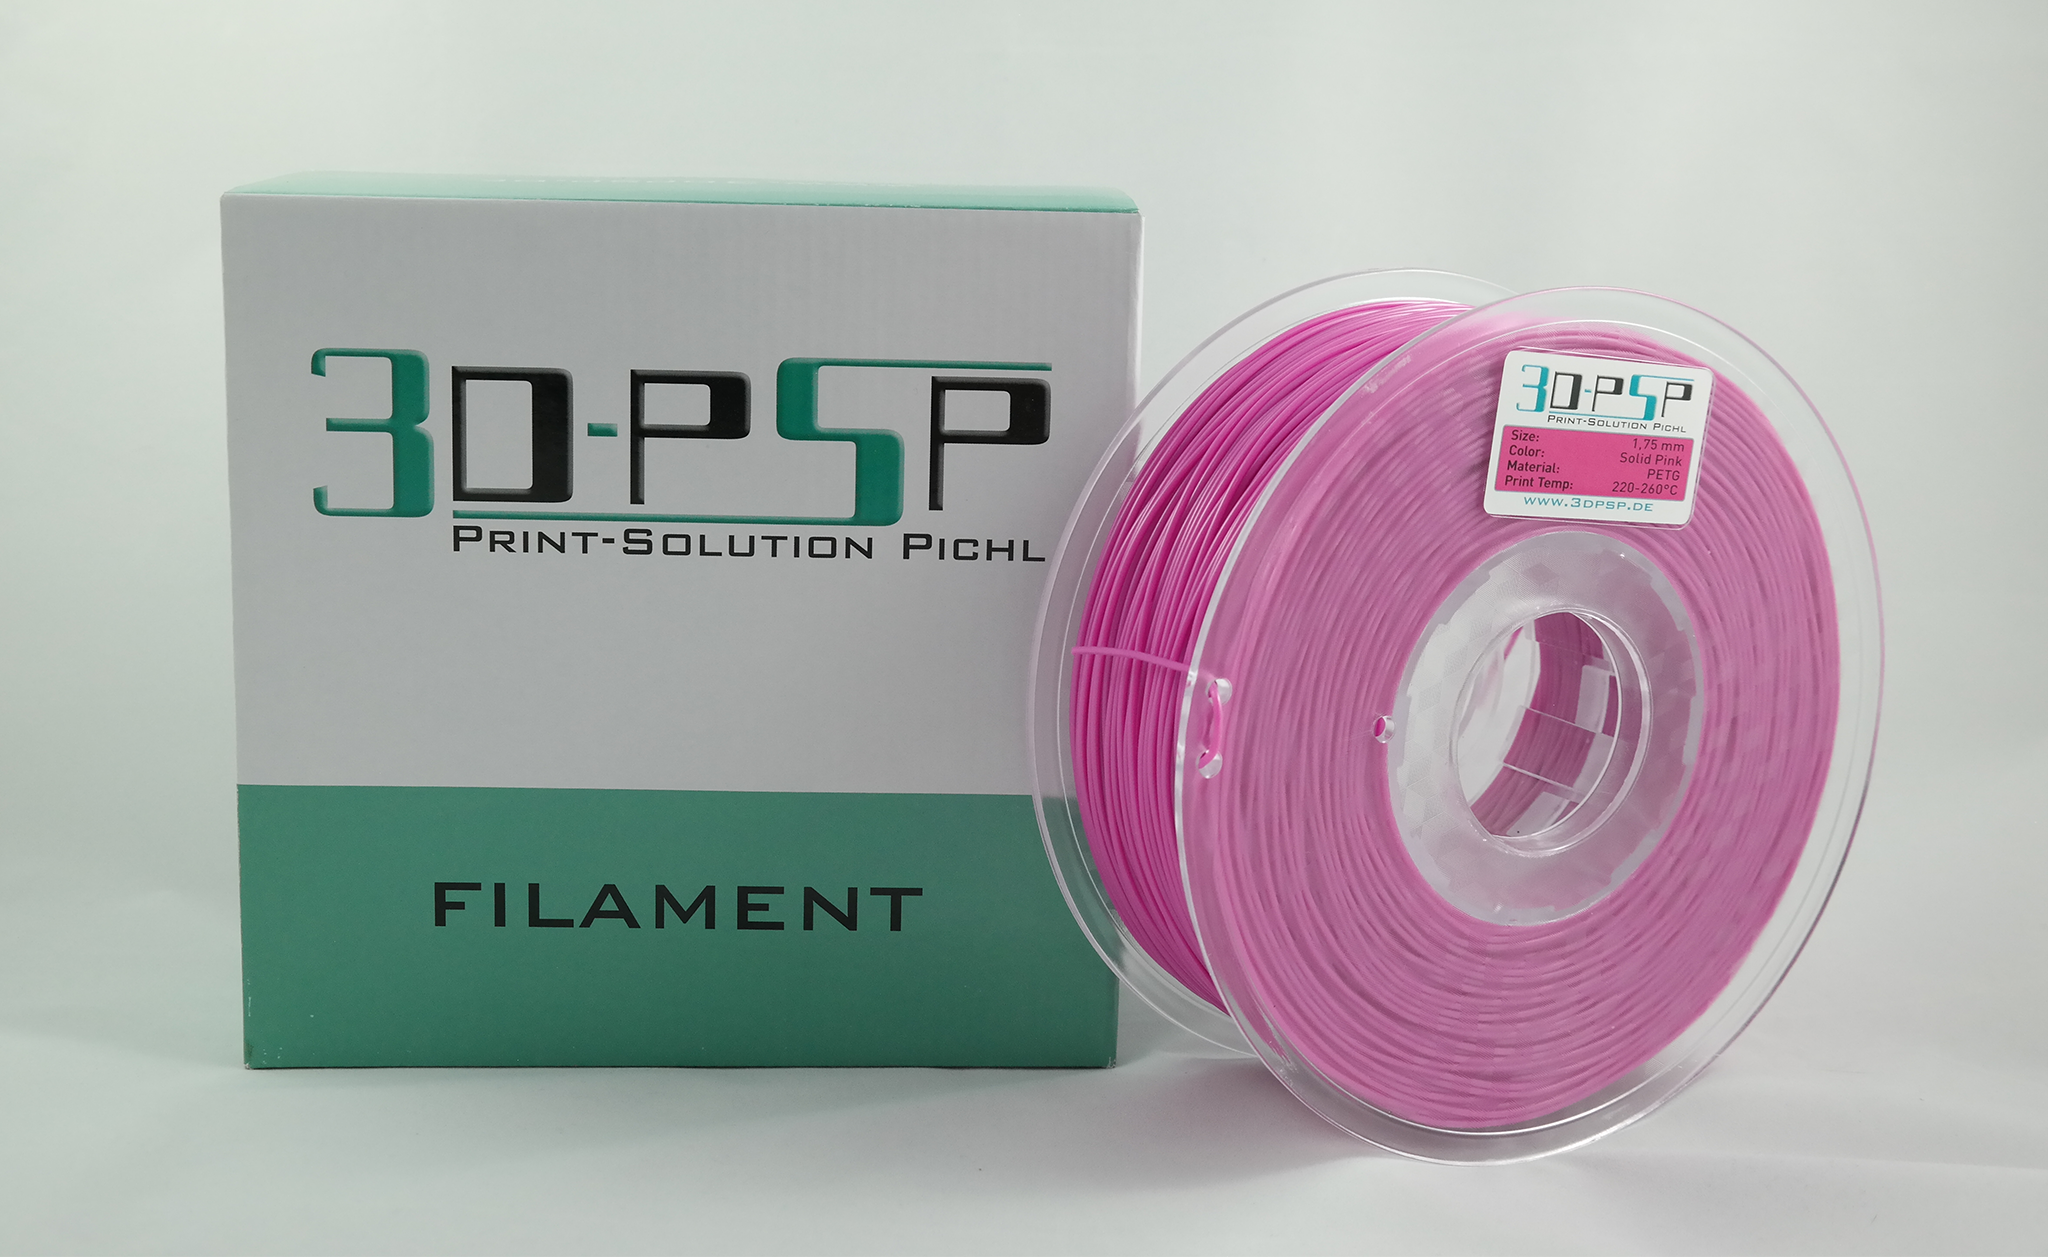 3DPSP PETG Filament  - Solid Pink - 1.75mm - 1Kg